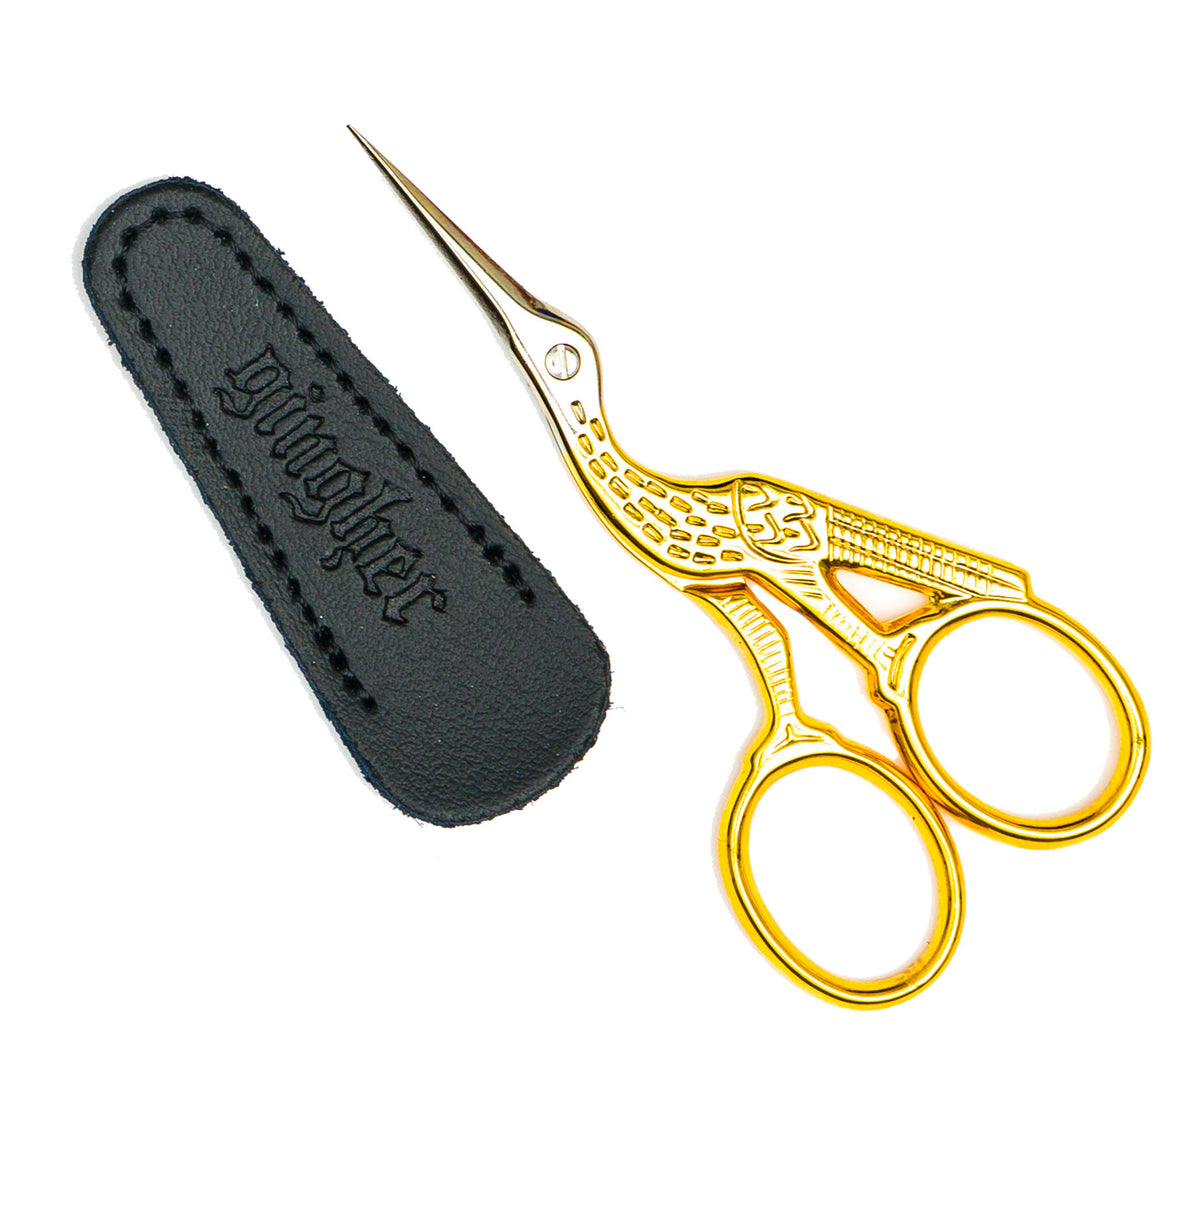 Gingher Stork Scissors – Po's Needlepoint